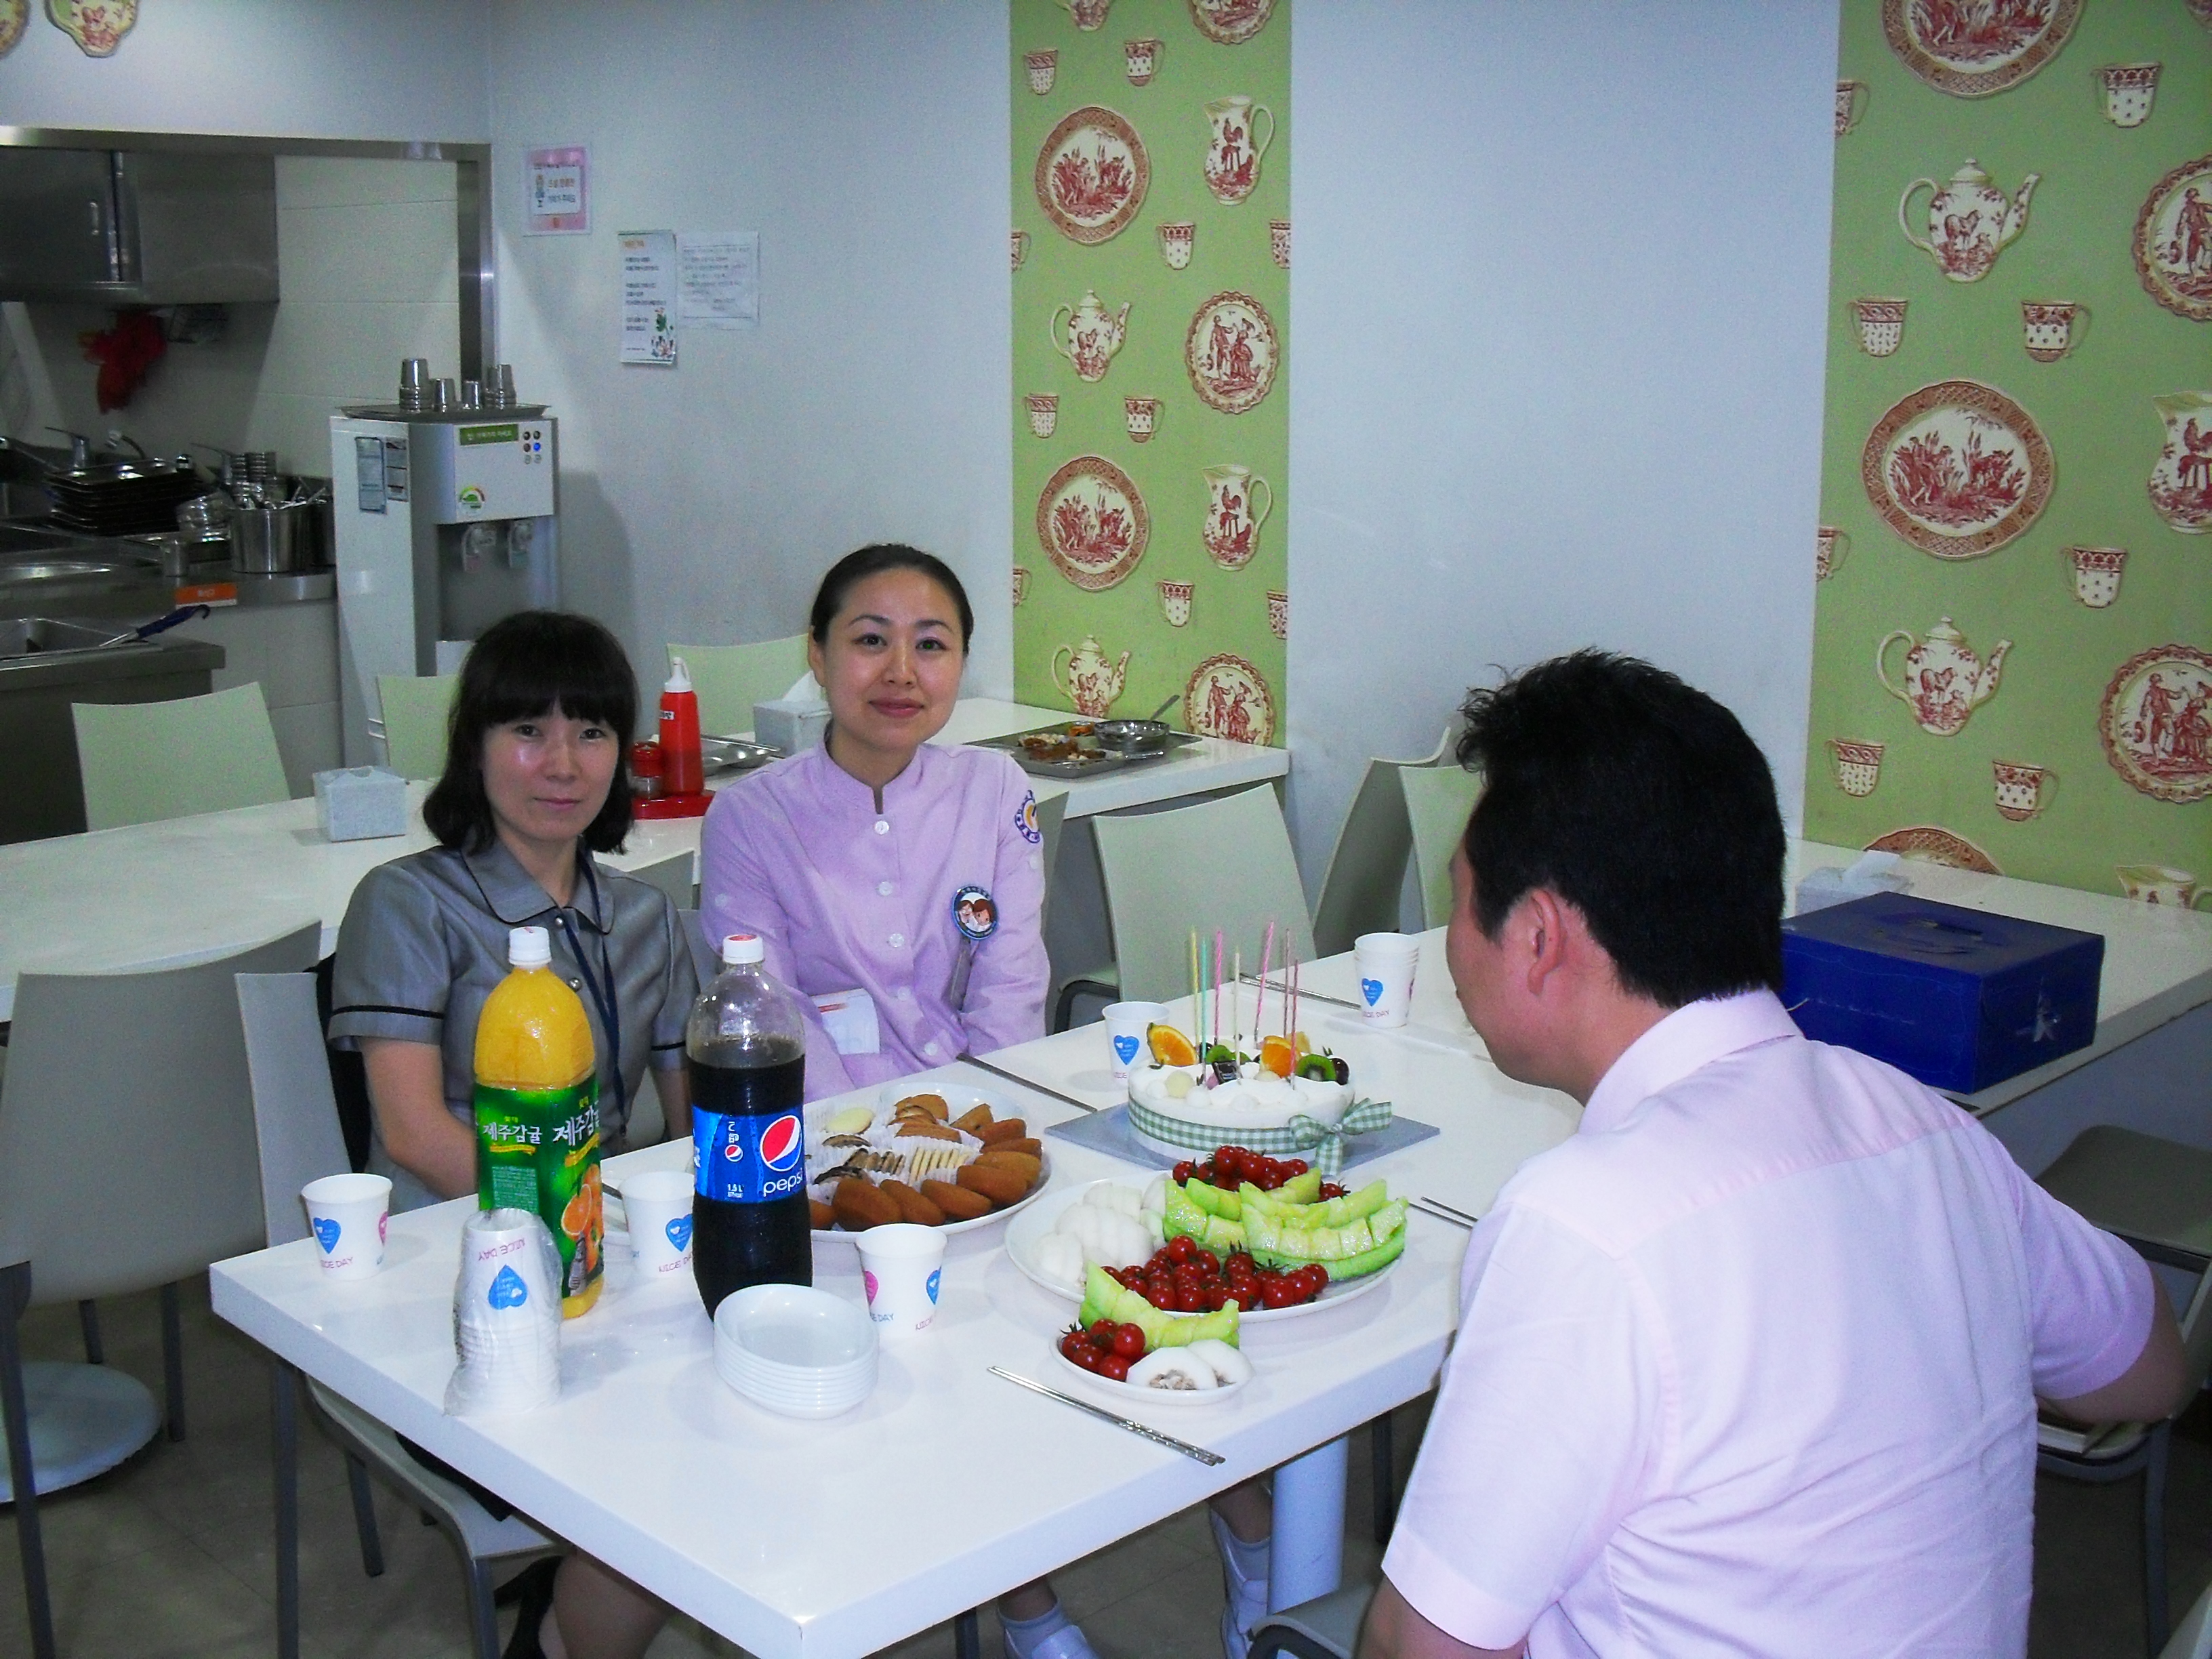 강남 1병원 7월 달 직원 생일파티 게시글의 7번째 첨부파일입니다.